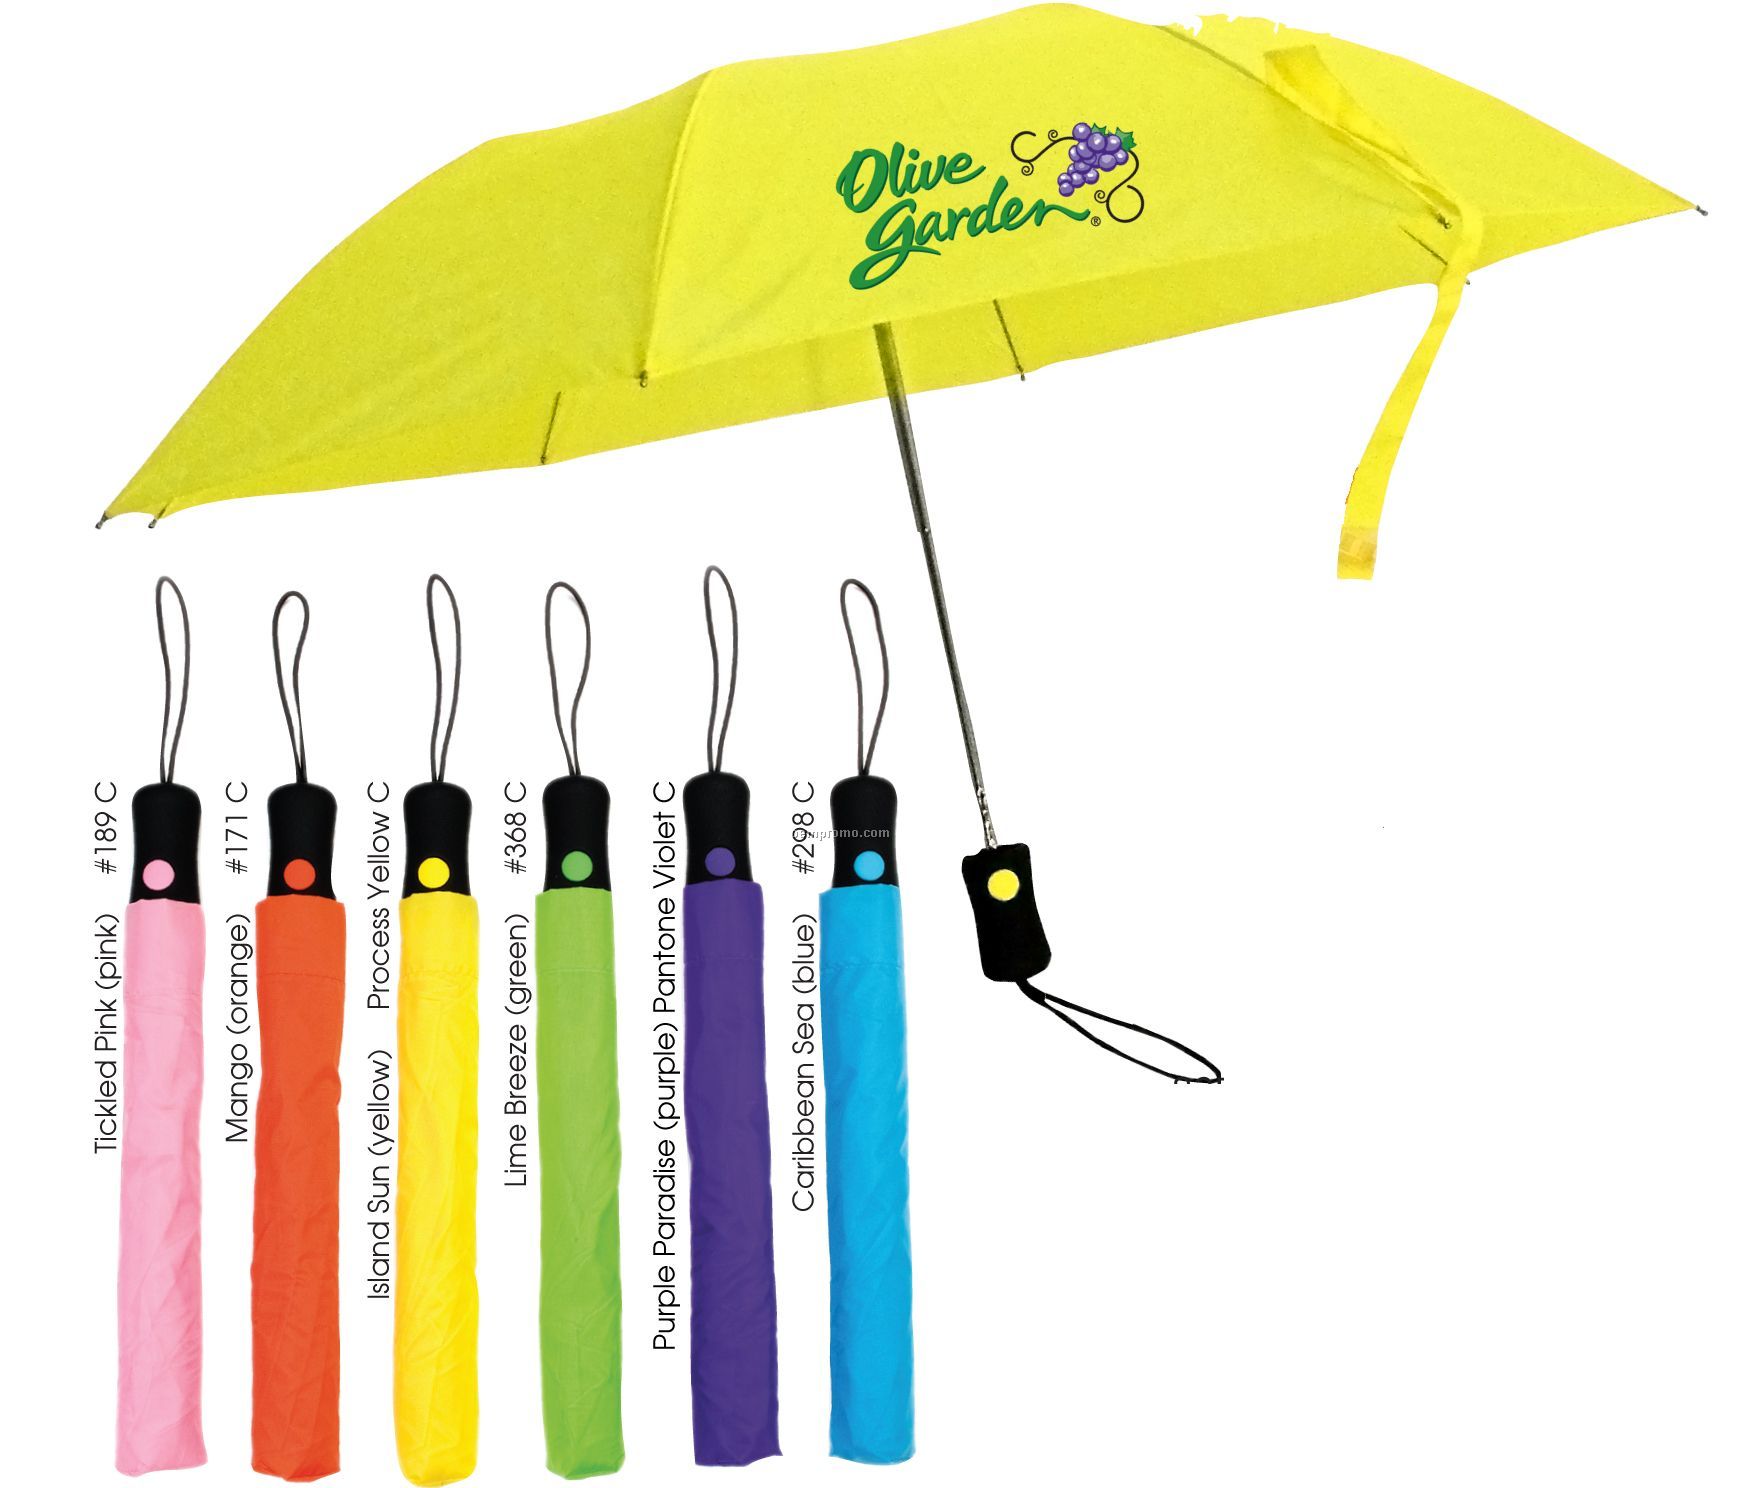 Spirit Folding Umbrella (Full Color)